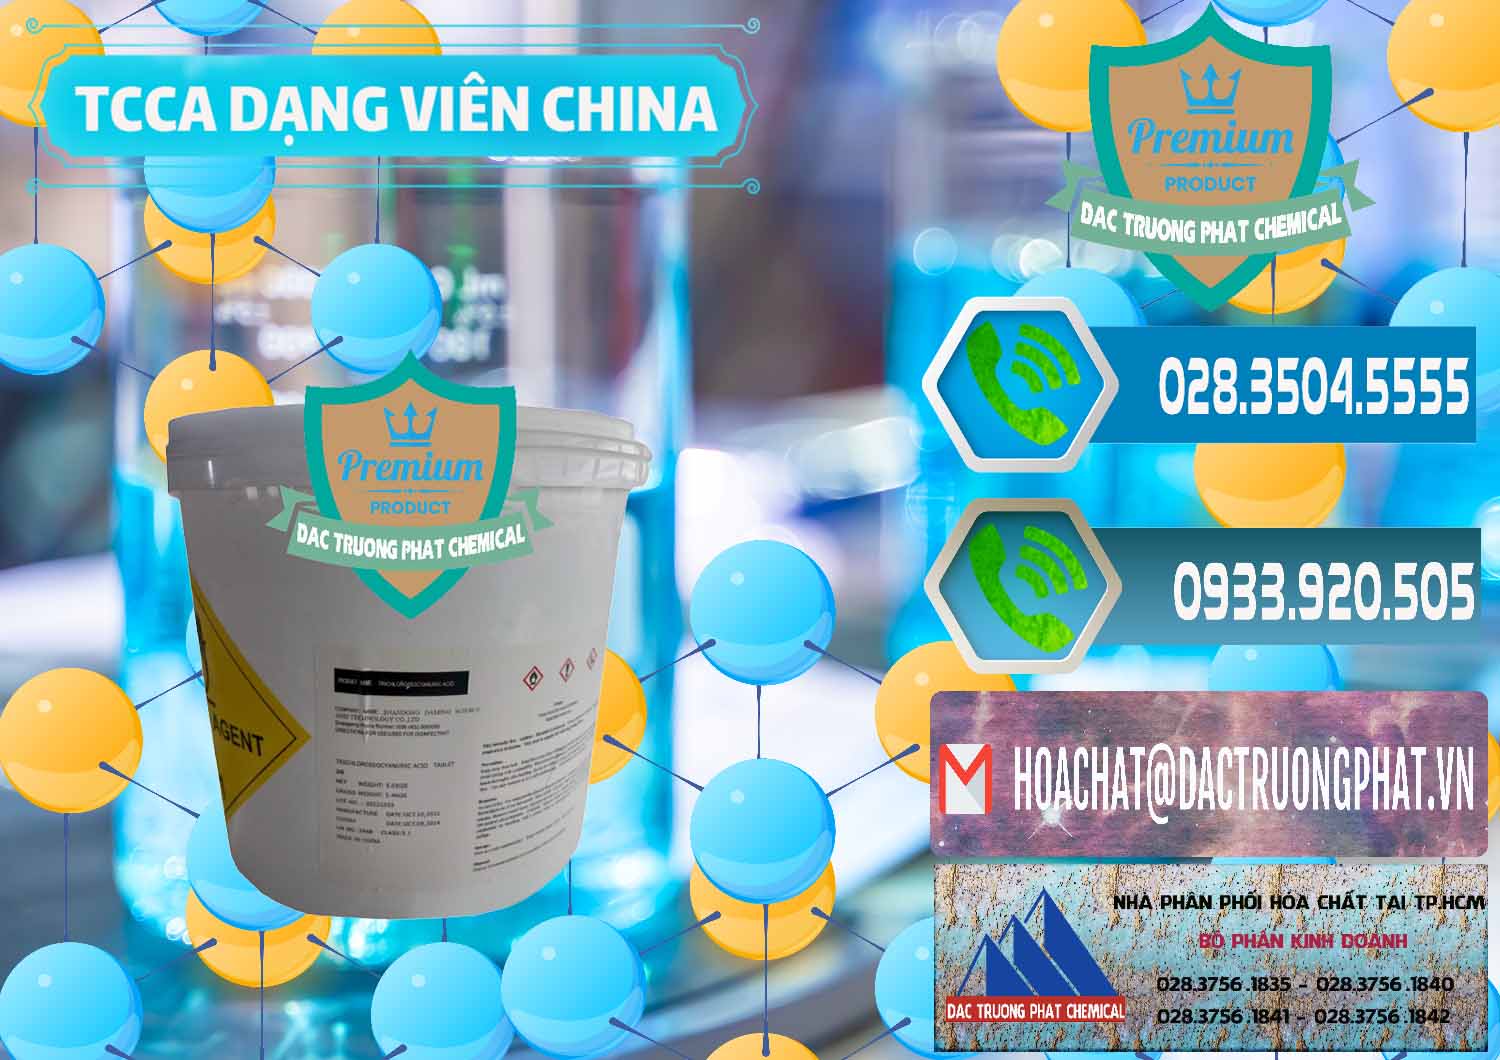 Cty chuyên bán ( phân phối ) TCCA - Acid Trichloroisocyanuric Dạng Viên Thùng 5kg Trung Quốc China - 0379 - Công ty chuyên kinh doanh _ cung cấp hóa chất tại TP.HCM - congtyhoachat.net